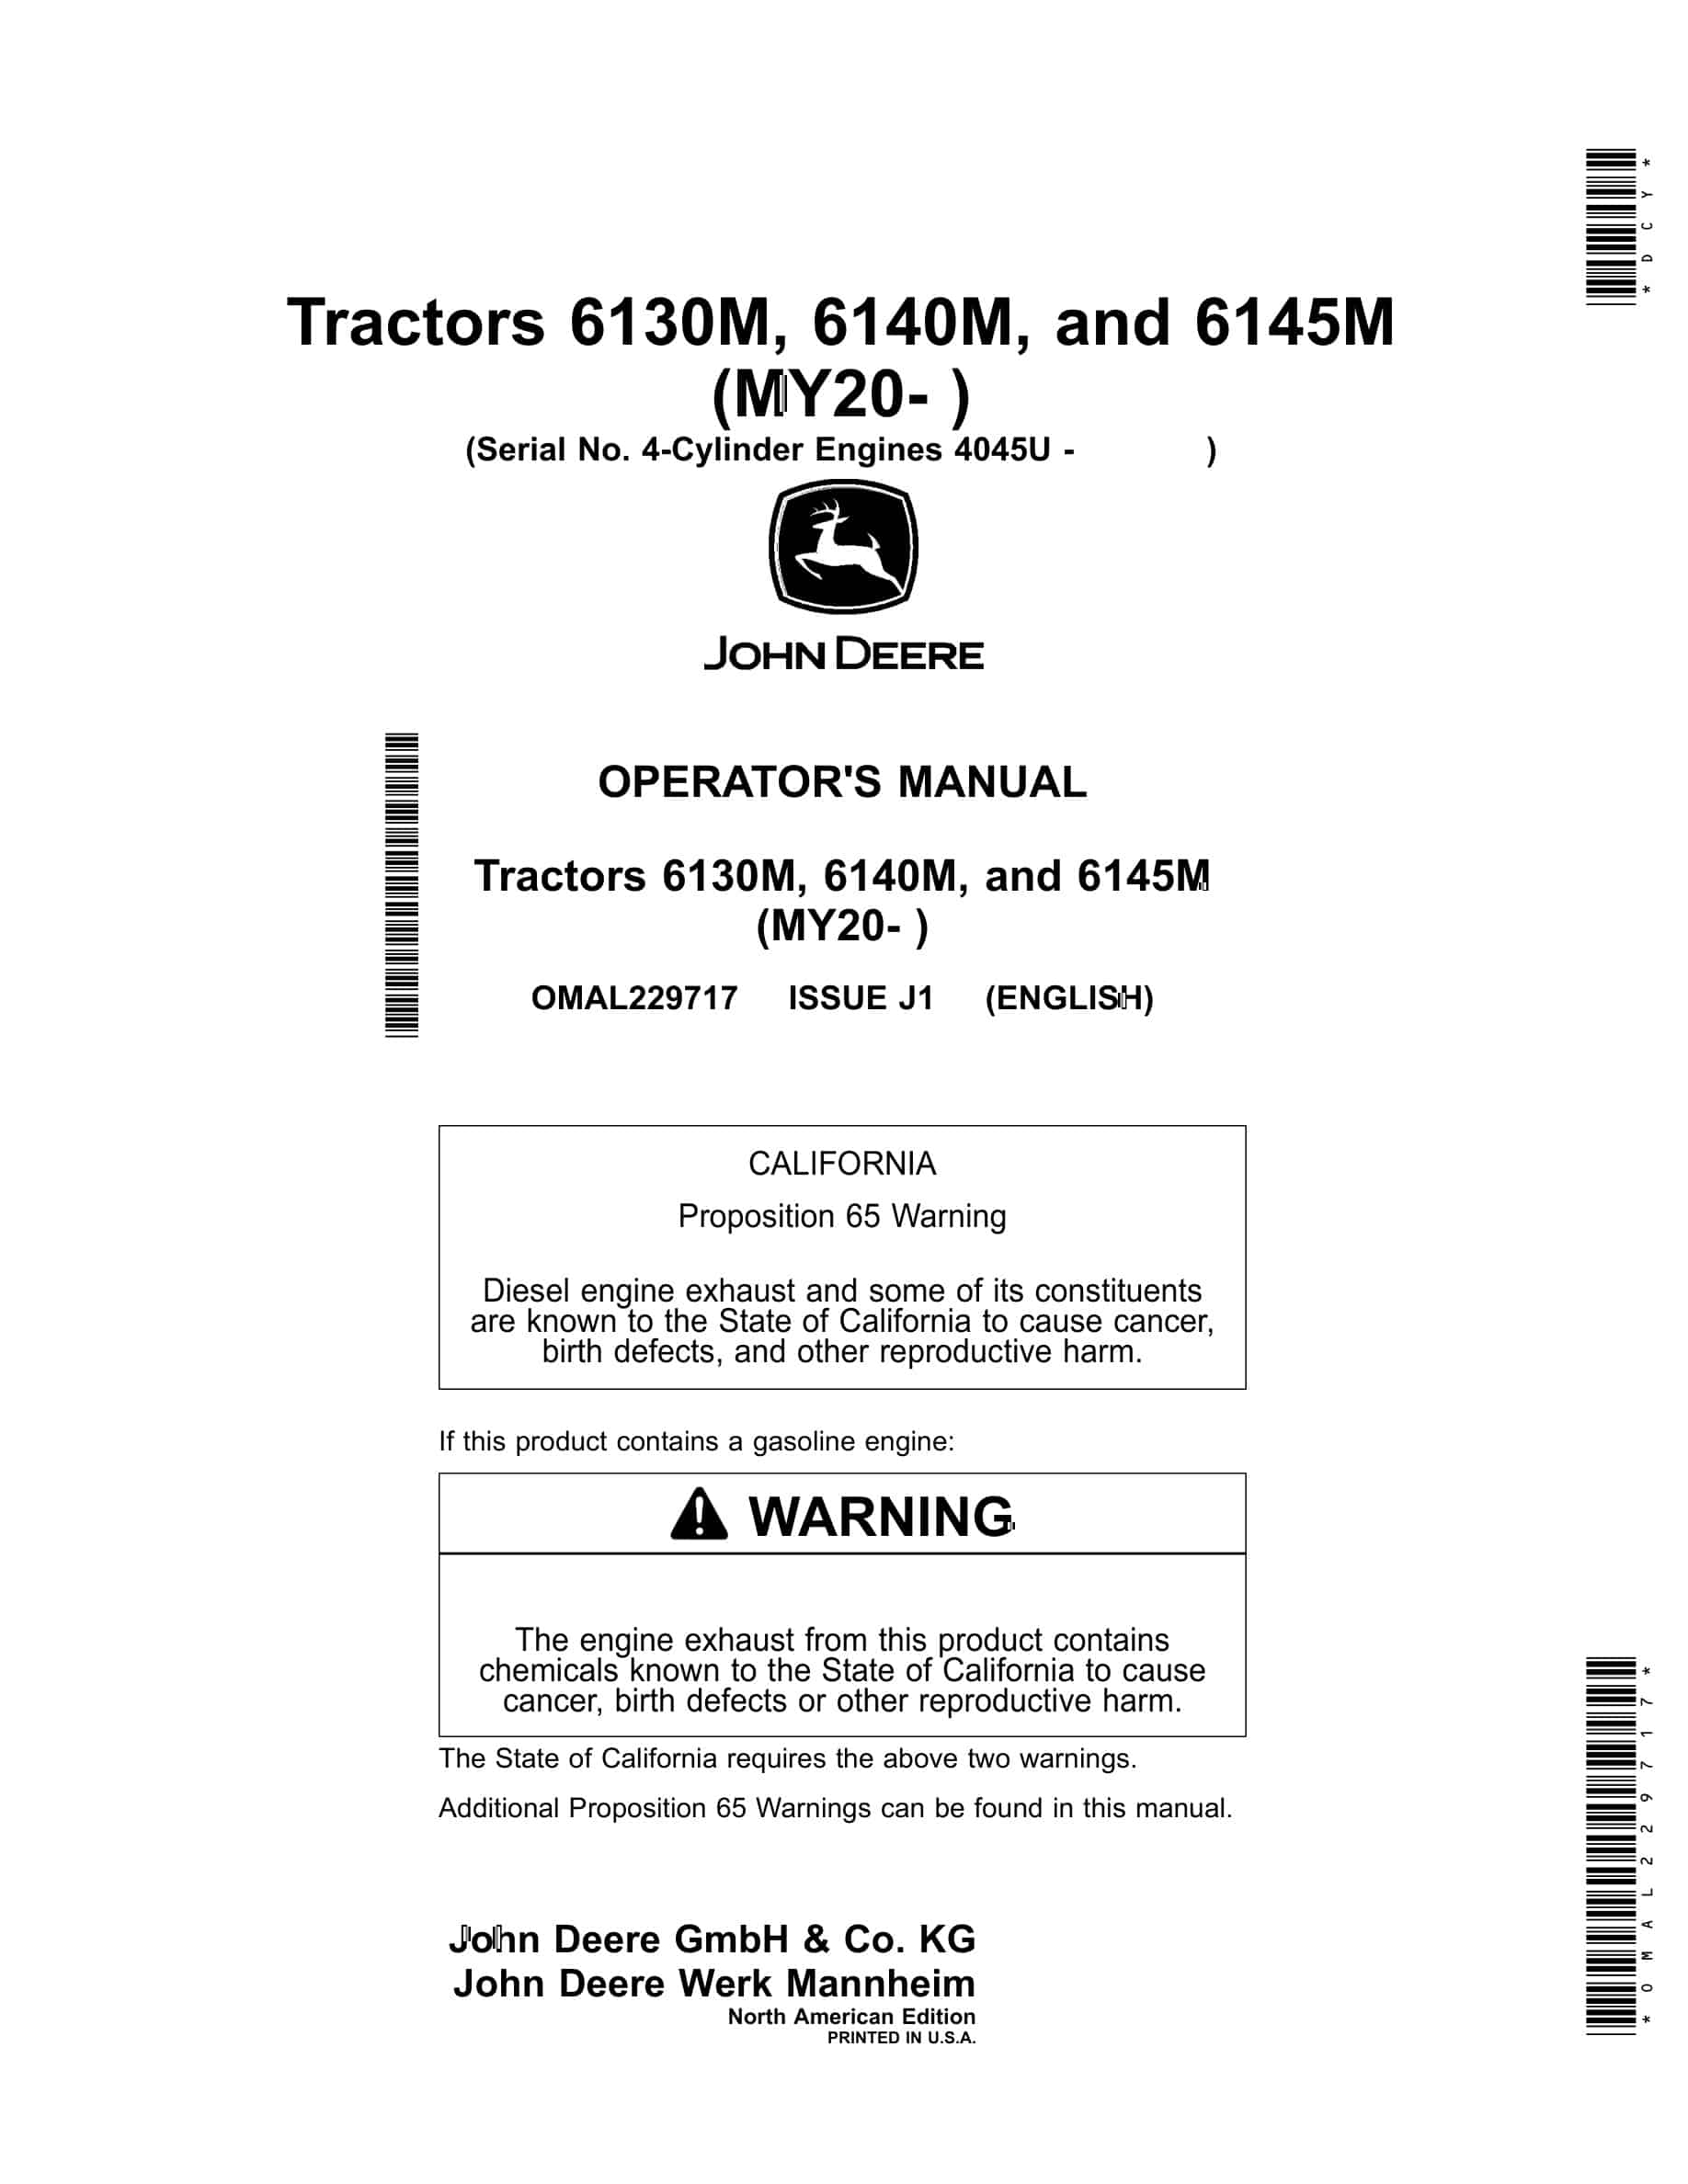 John Deere 6130M, 6140M, and 6145M Tractor Operator Manual OMAL229717-1